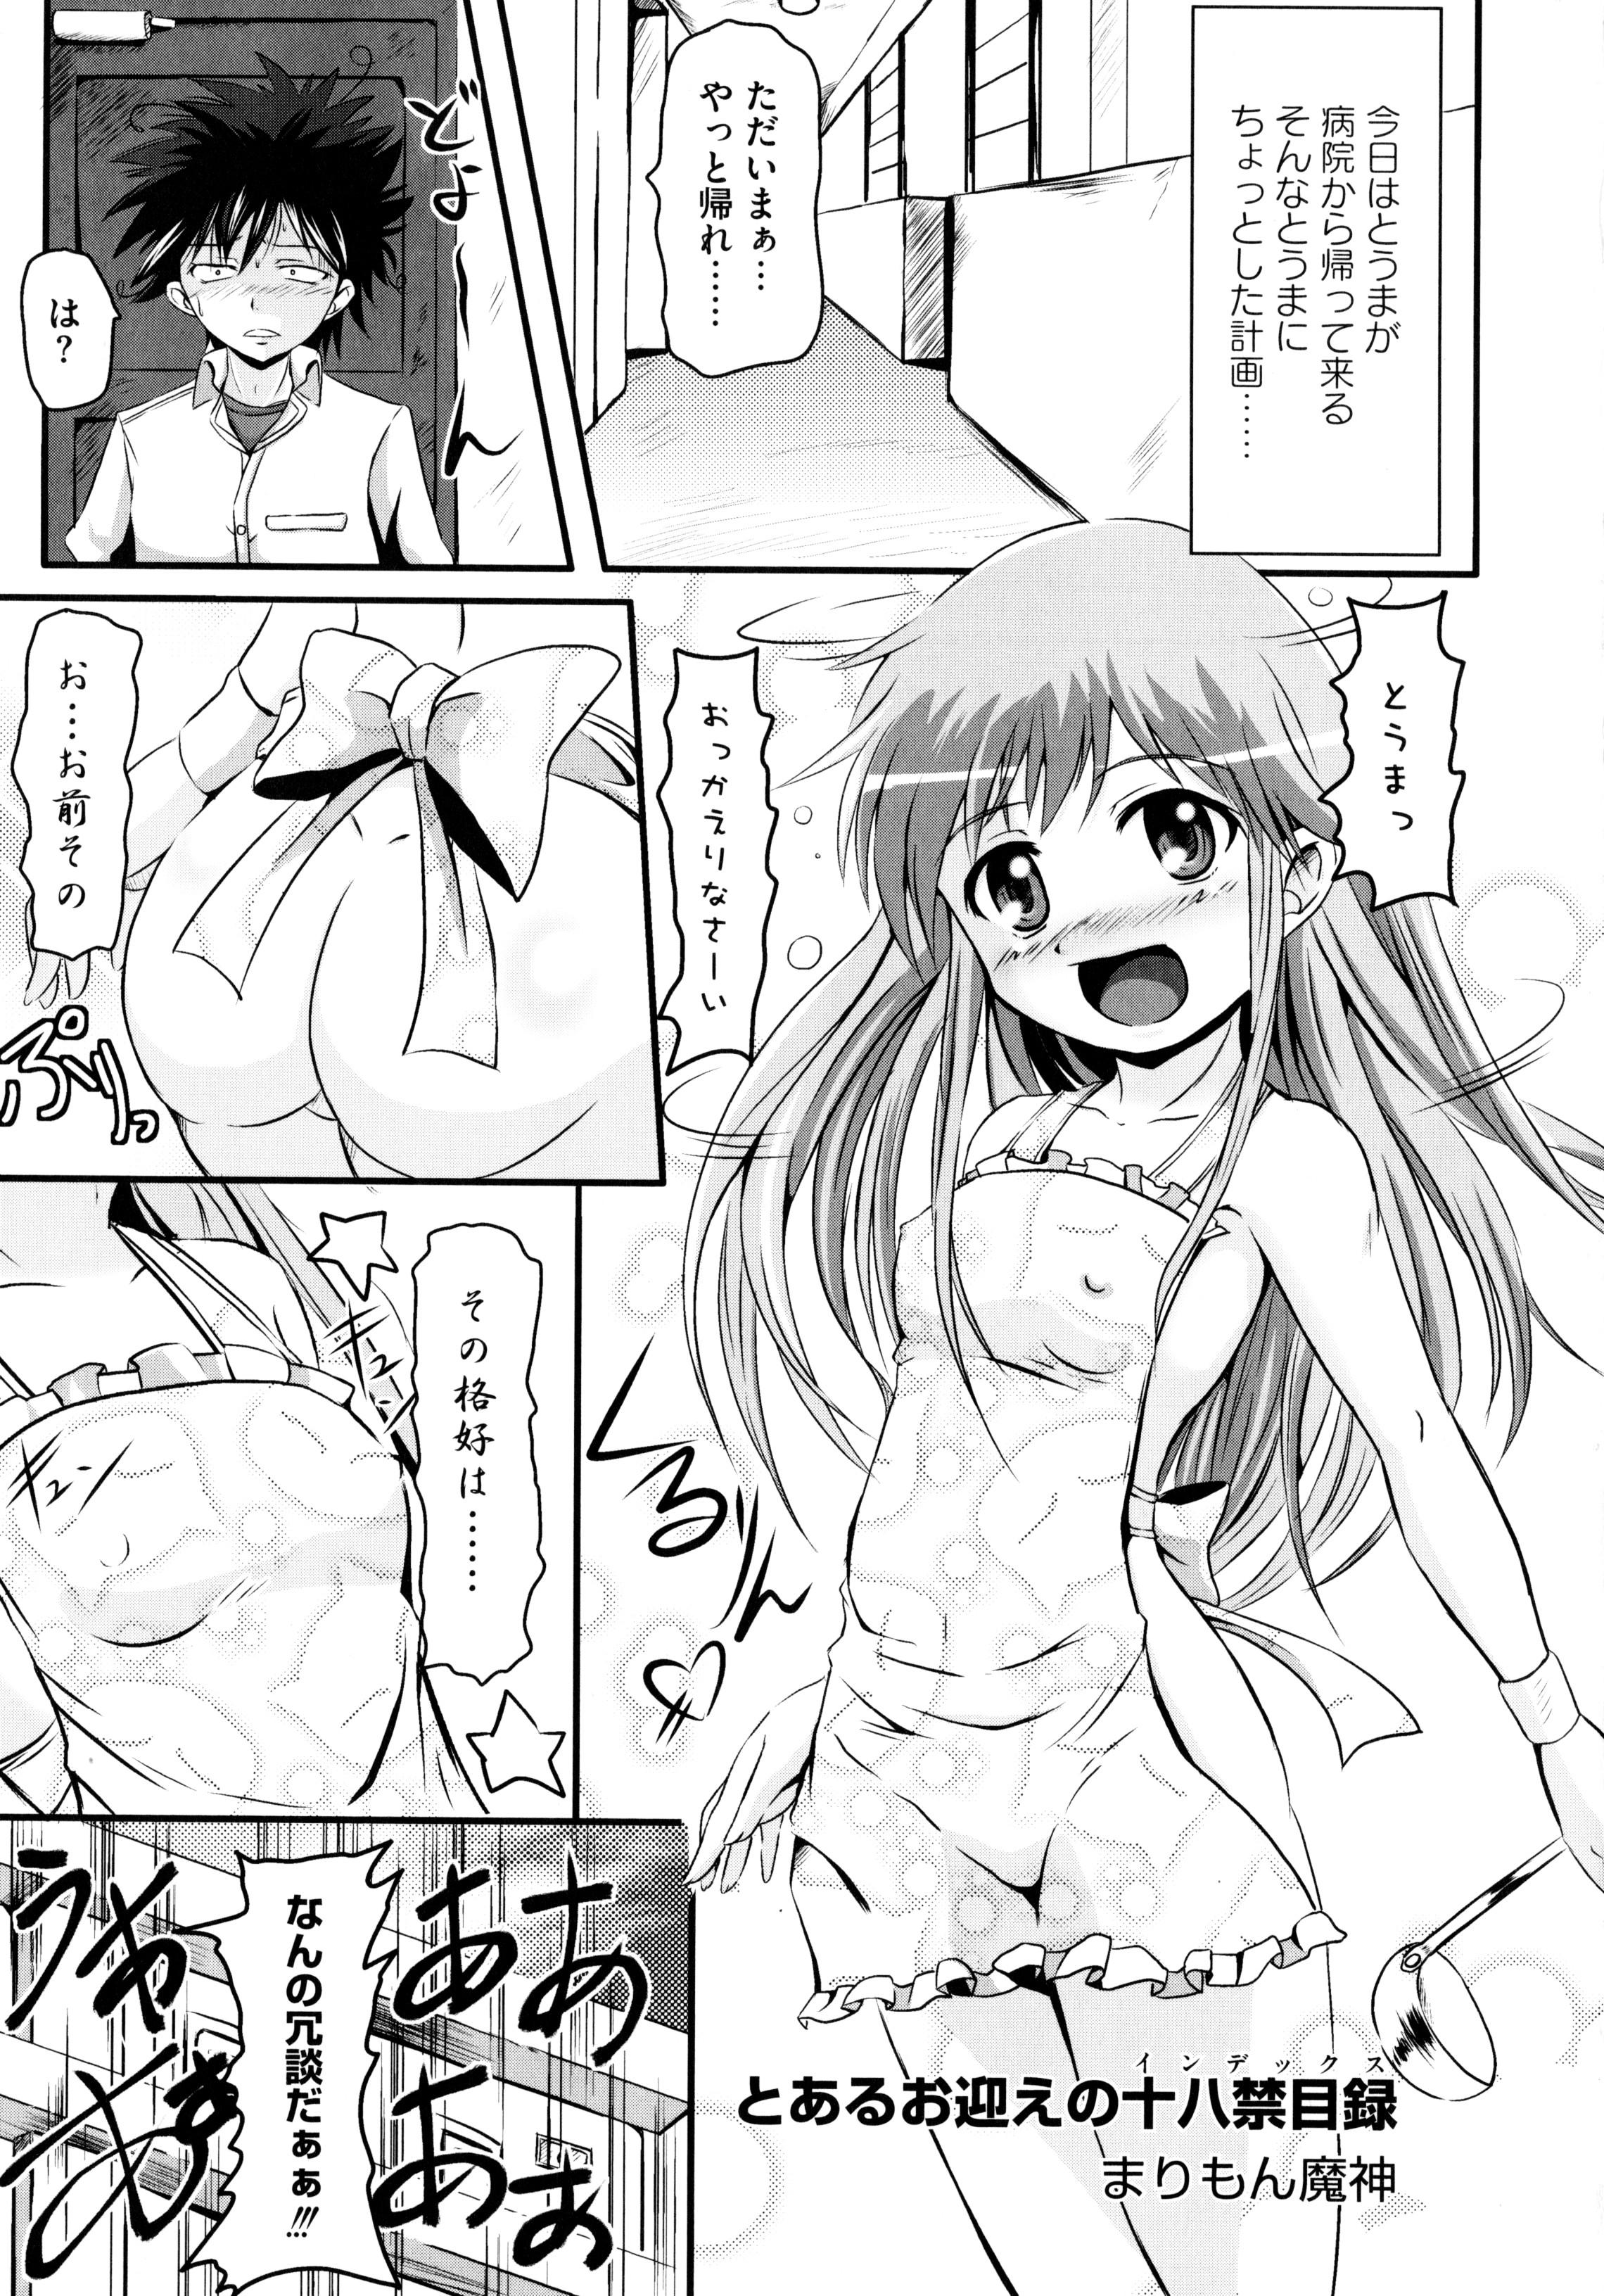 Petite Toaru Inbi na Erosho Mokuroku - Toaru kagaku no railgun Toaru majutsu no index Perverted - Page 5